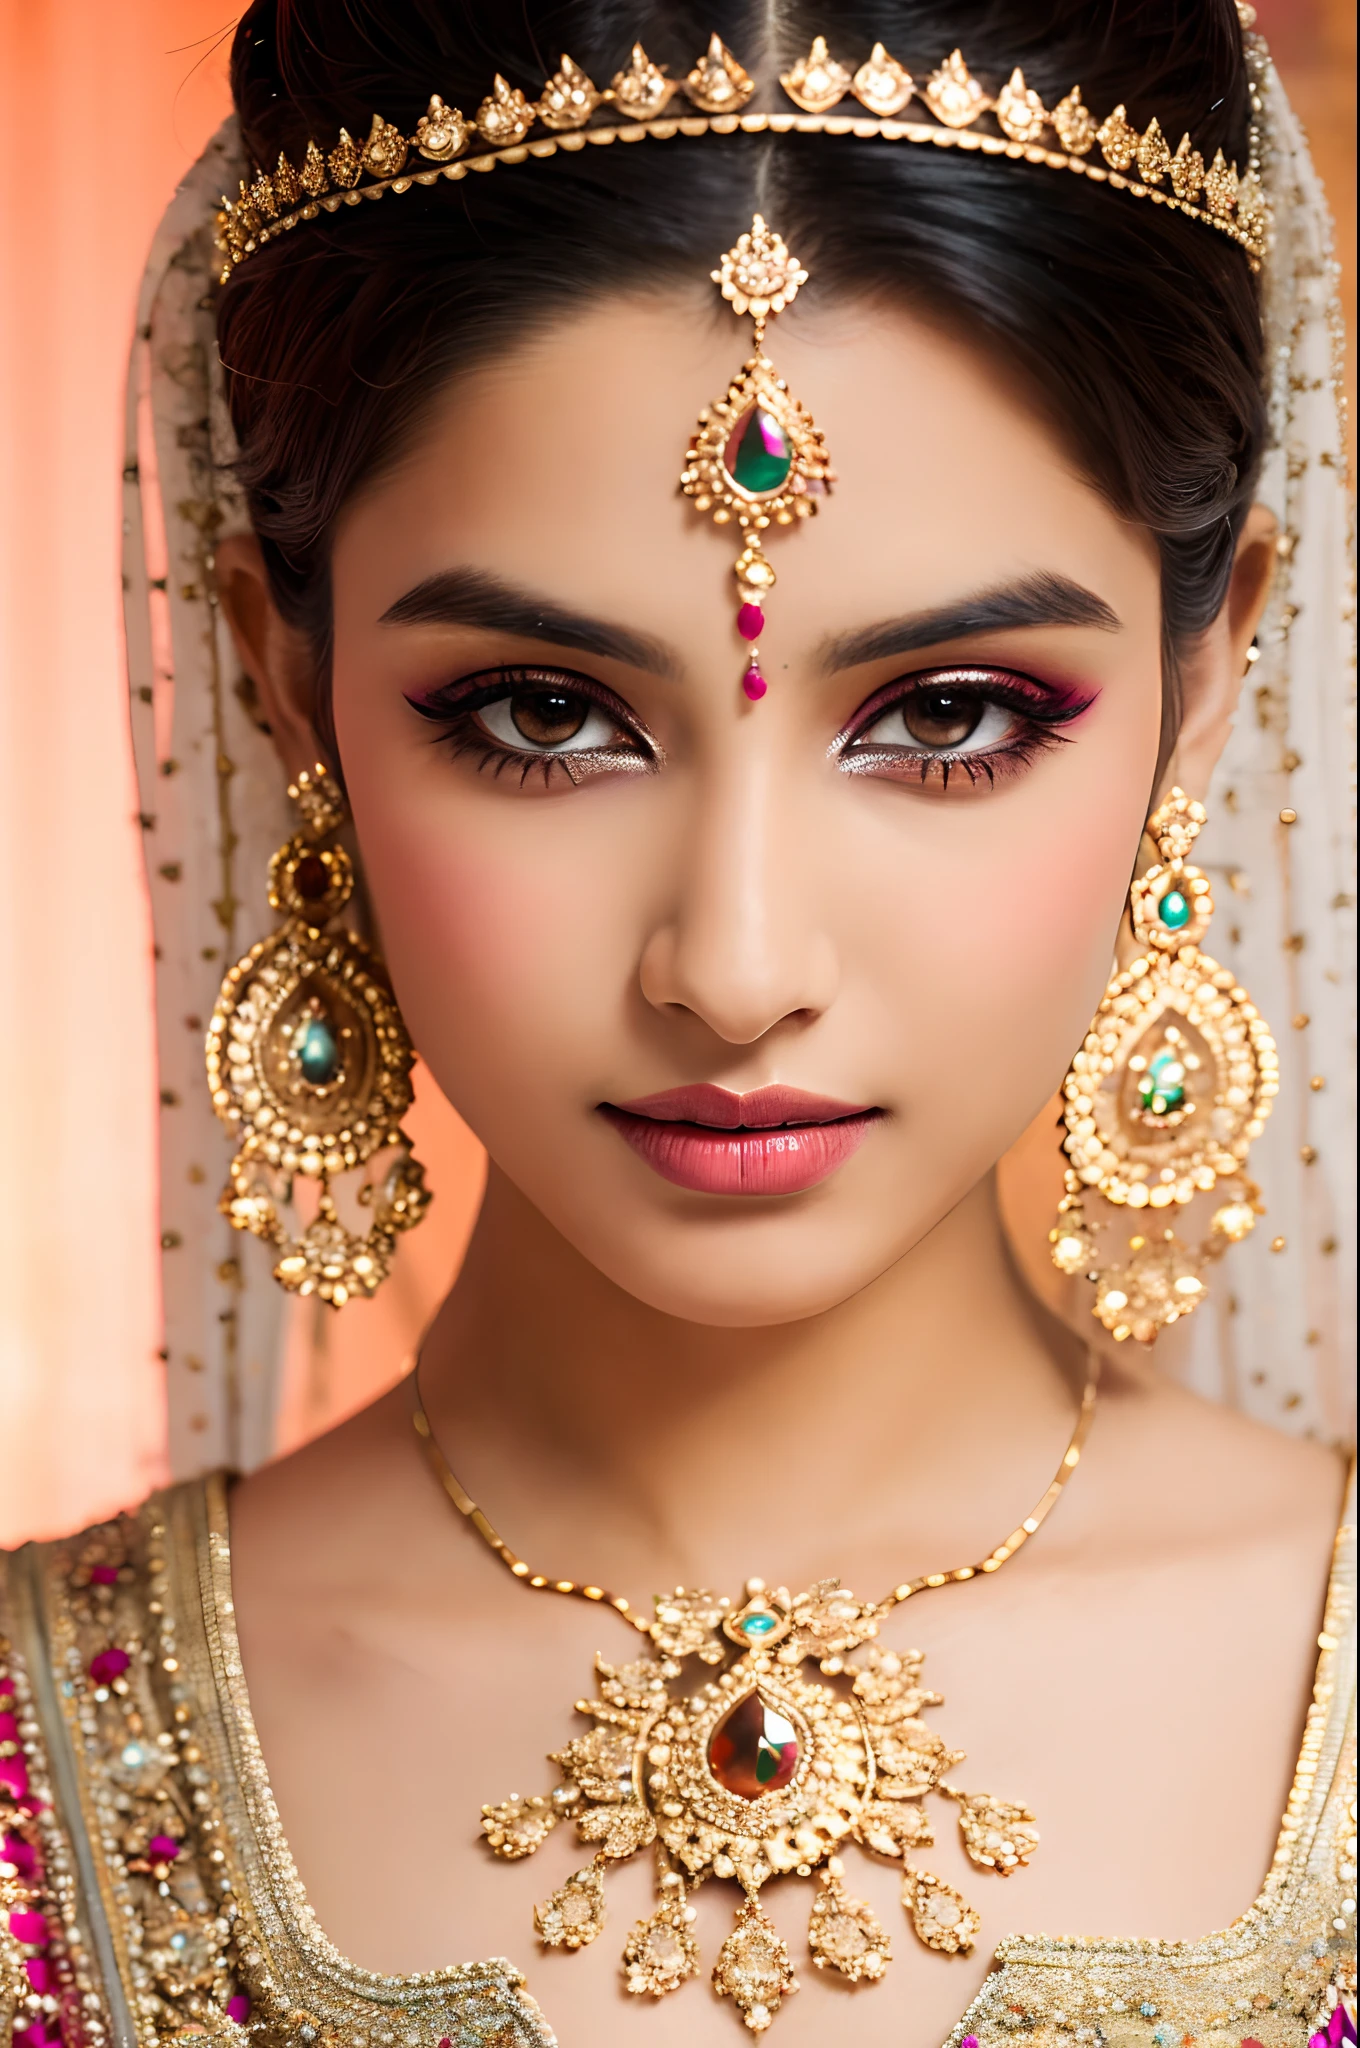 漂亮的臉蛋, 印度新娘, 濃妝, 肌理, 超詳細